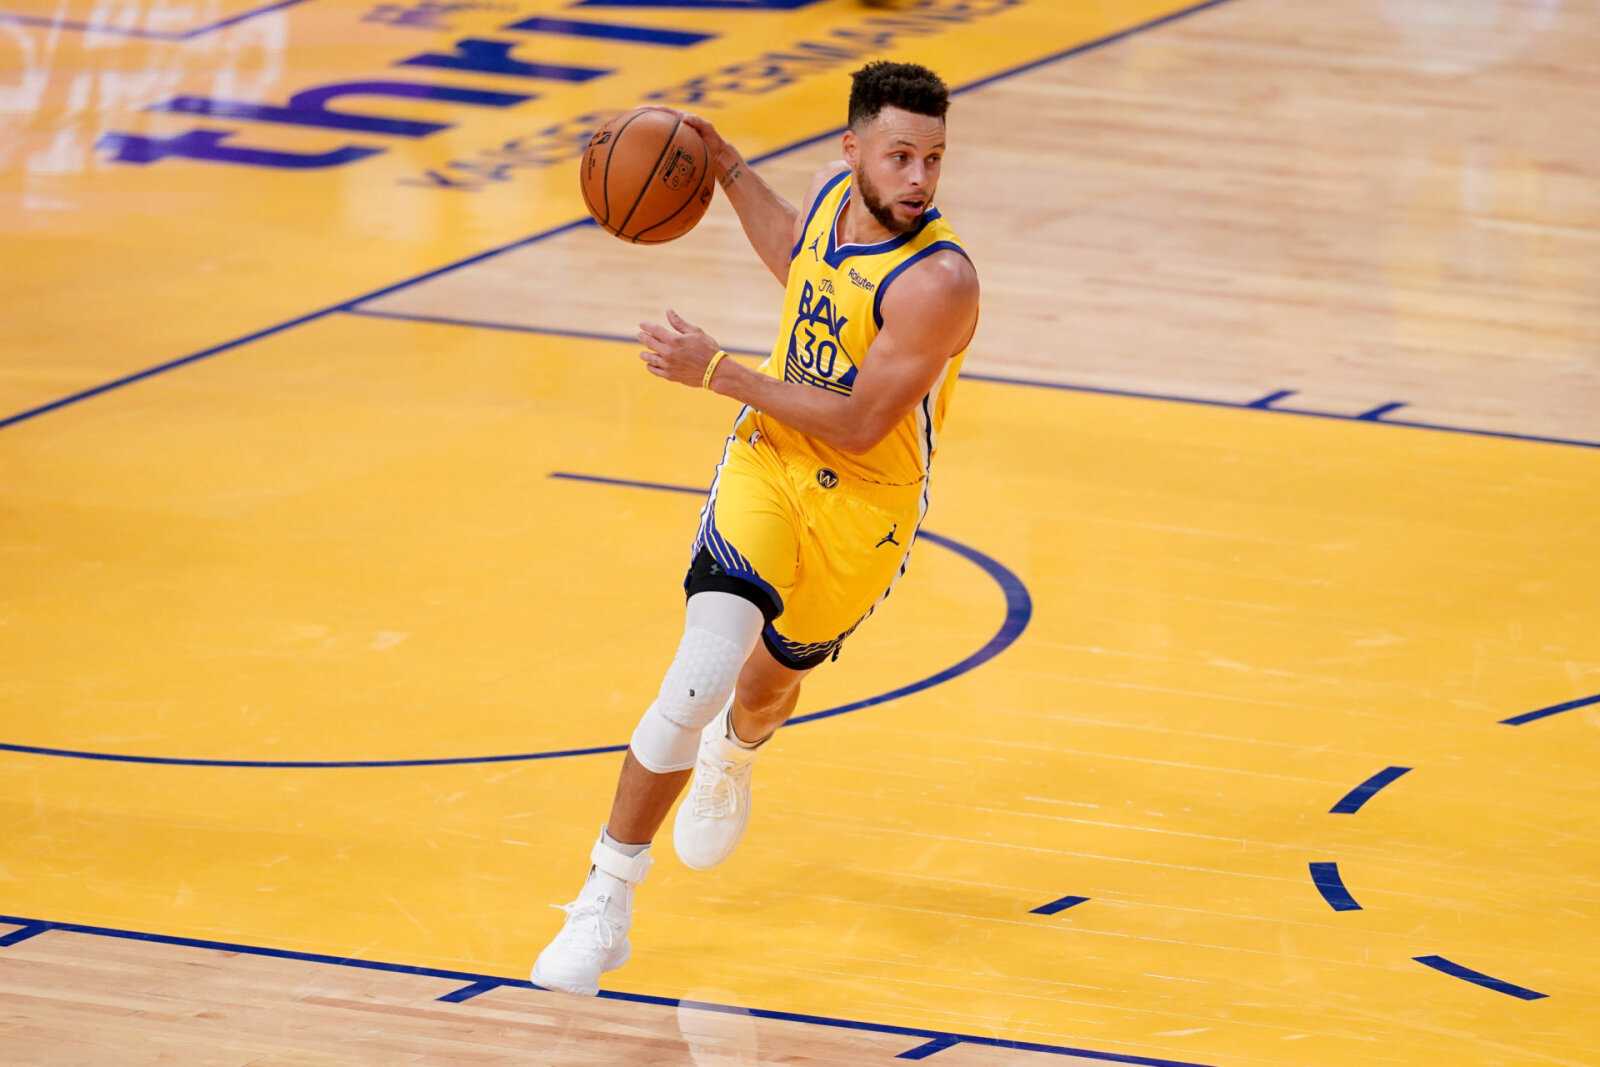 Steph Curry jouera-t-il ce soir?  Golden State Warriors vs Denver Nuggets - Prédictions, mises à jour sur les blessures et programmation